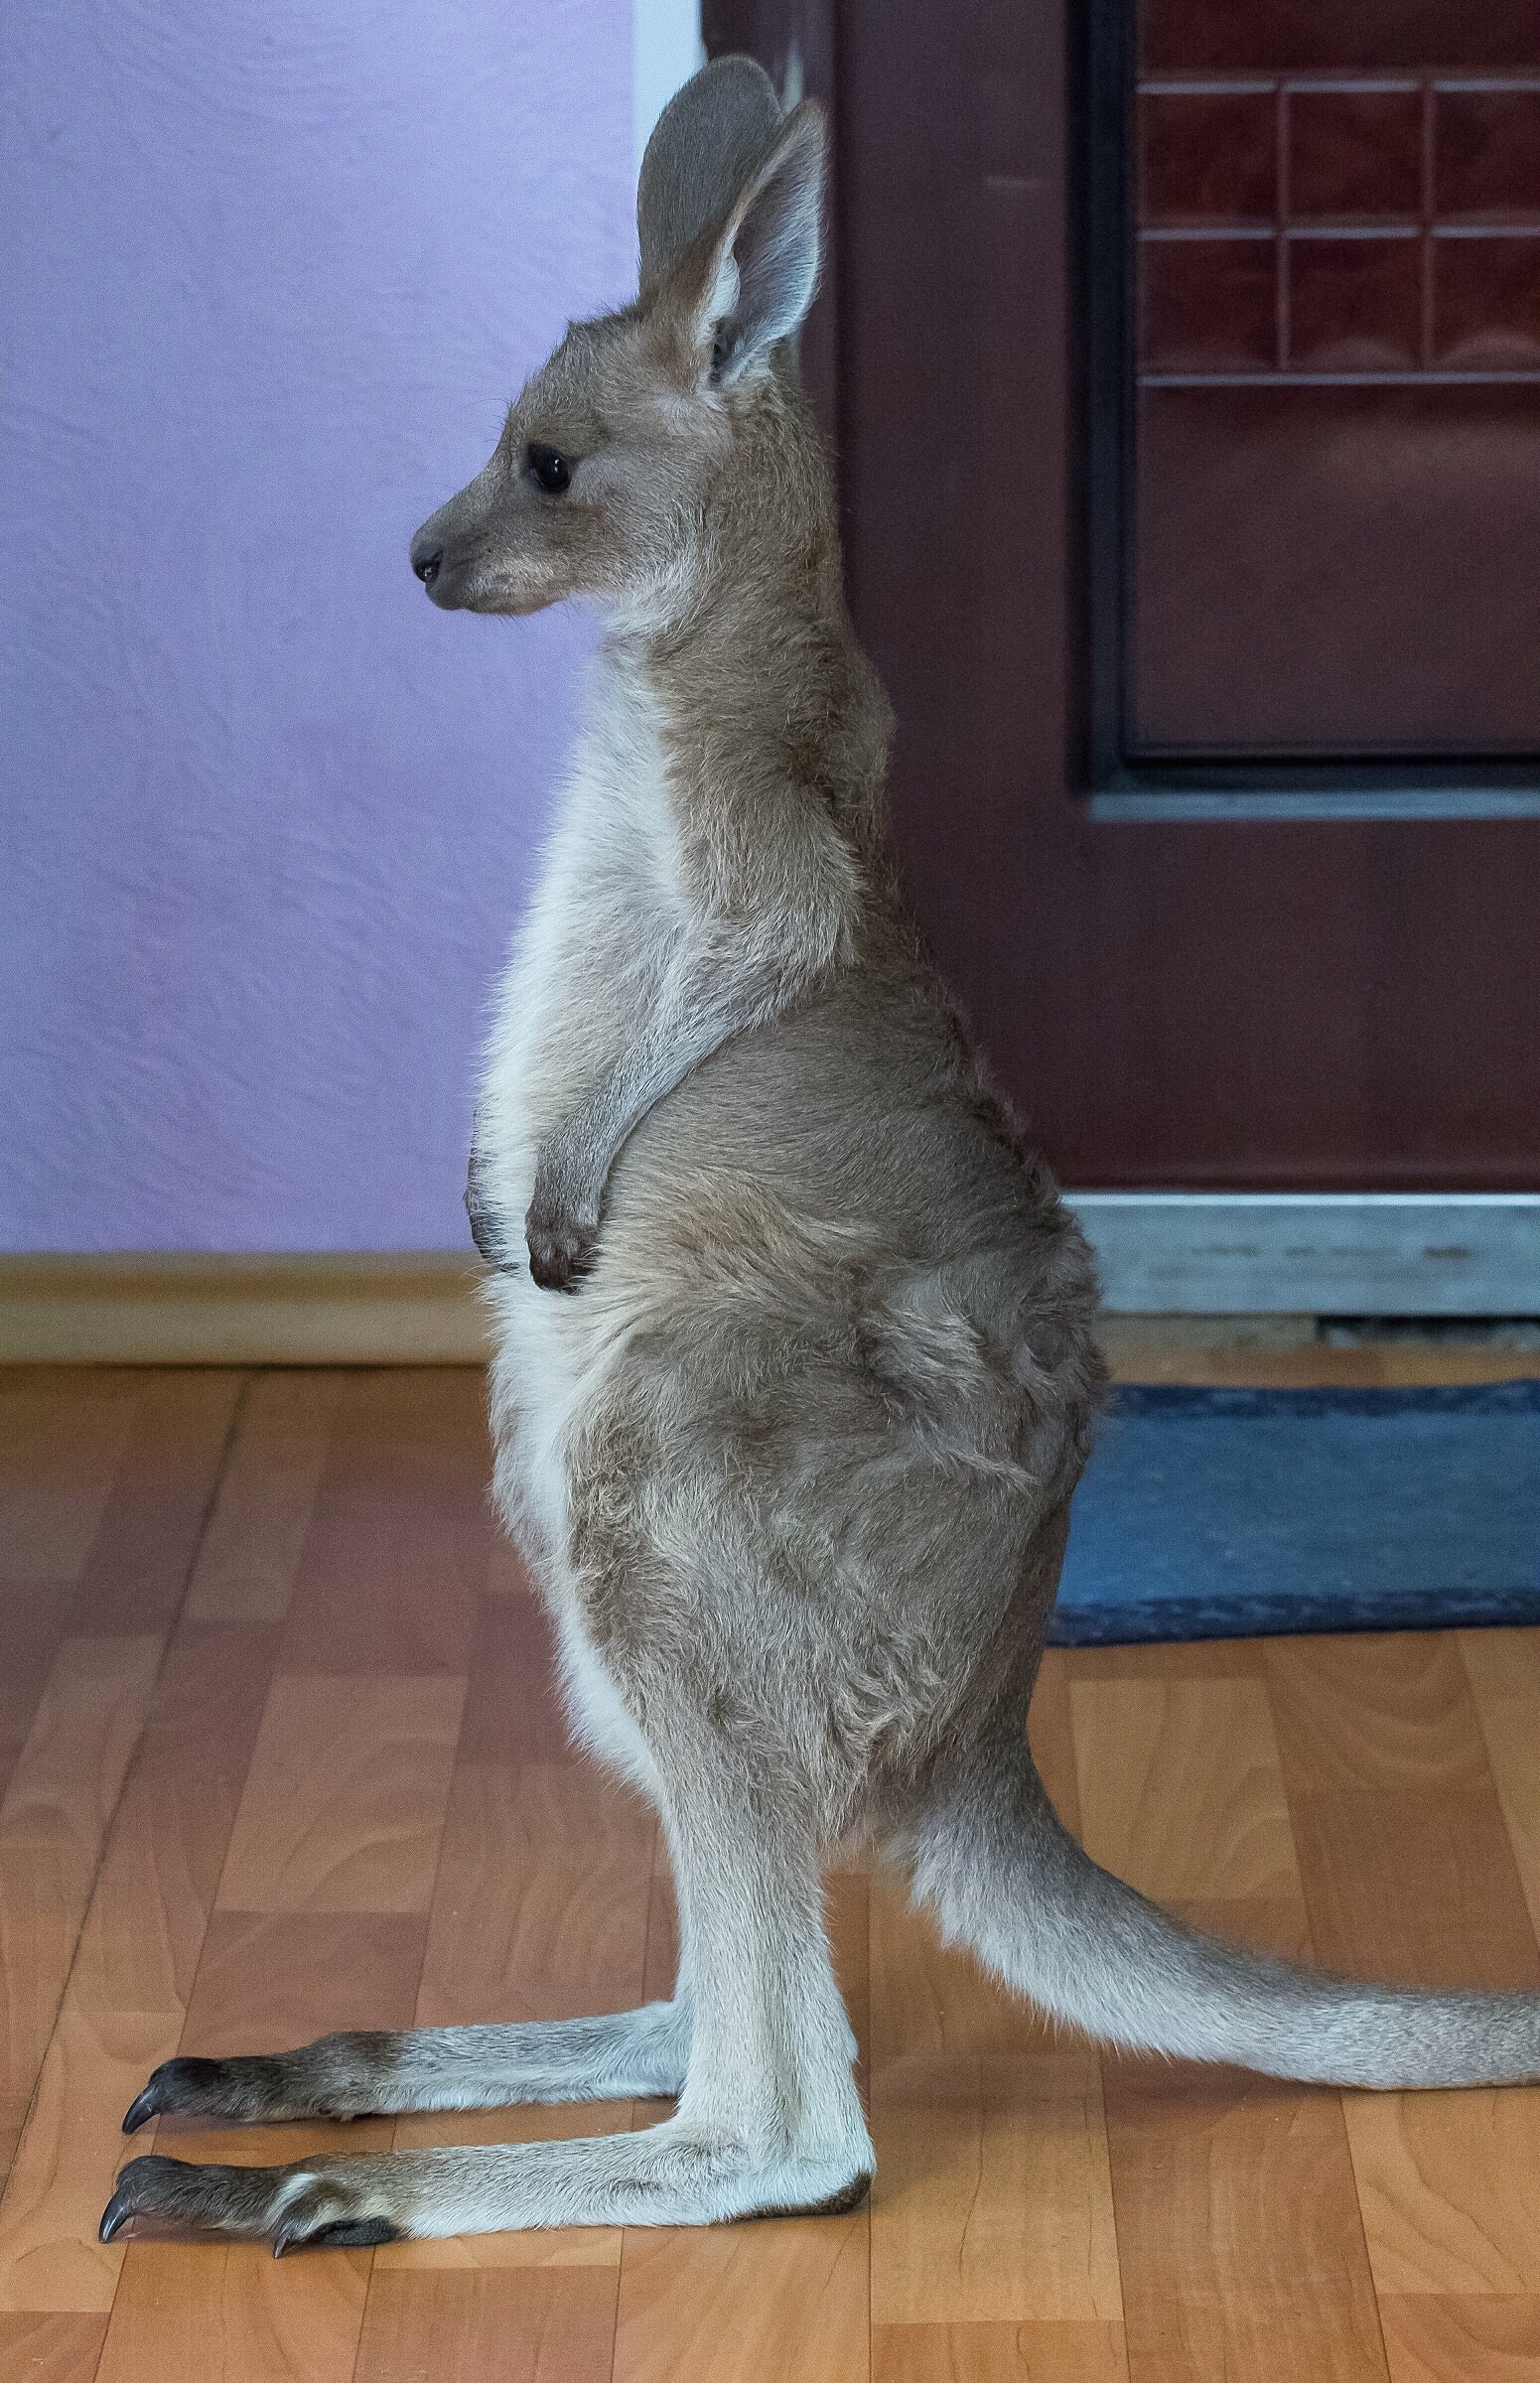 Мать отказалась пускать кенгурёнка в сумку, когда он ещё не стал самостоятельным